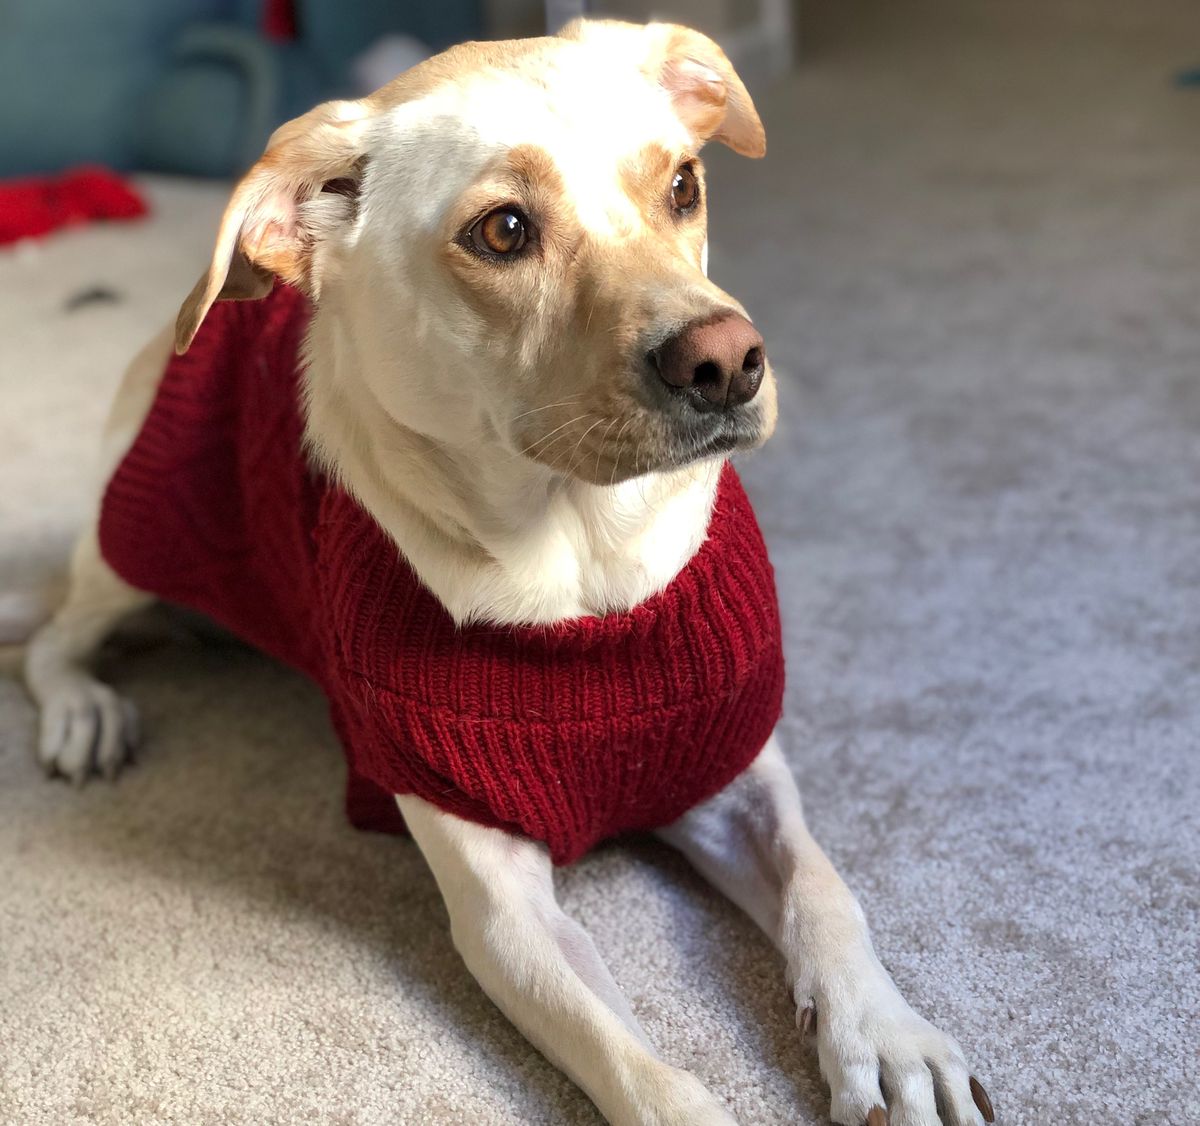 A golden labrador retriever/whippet mix wearing a red sweater